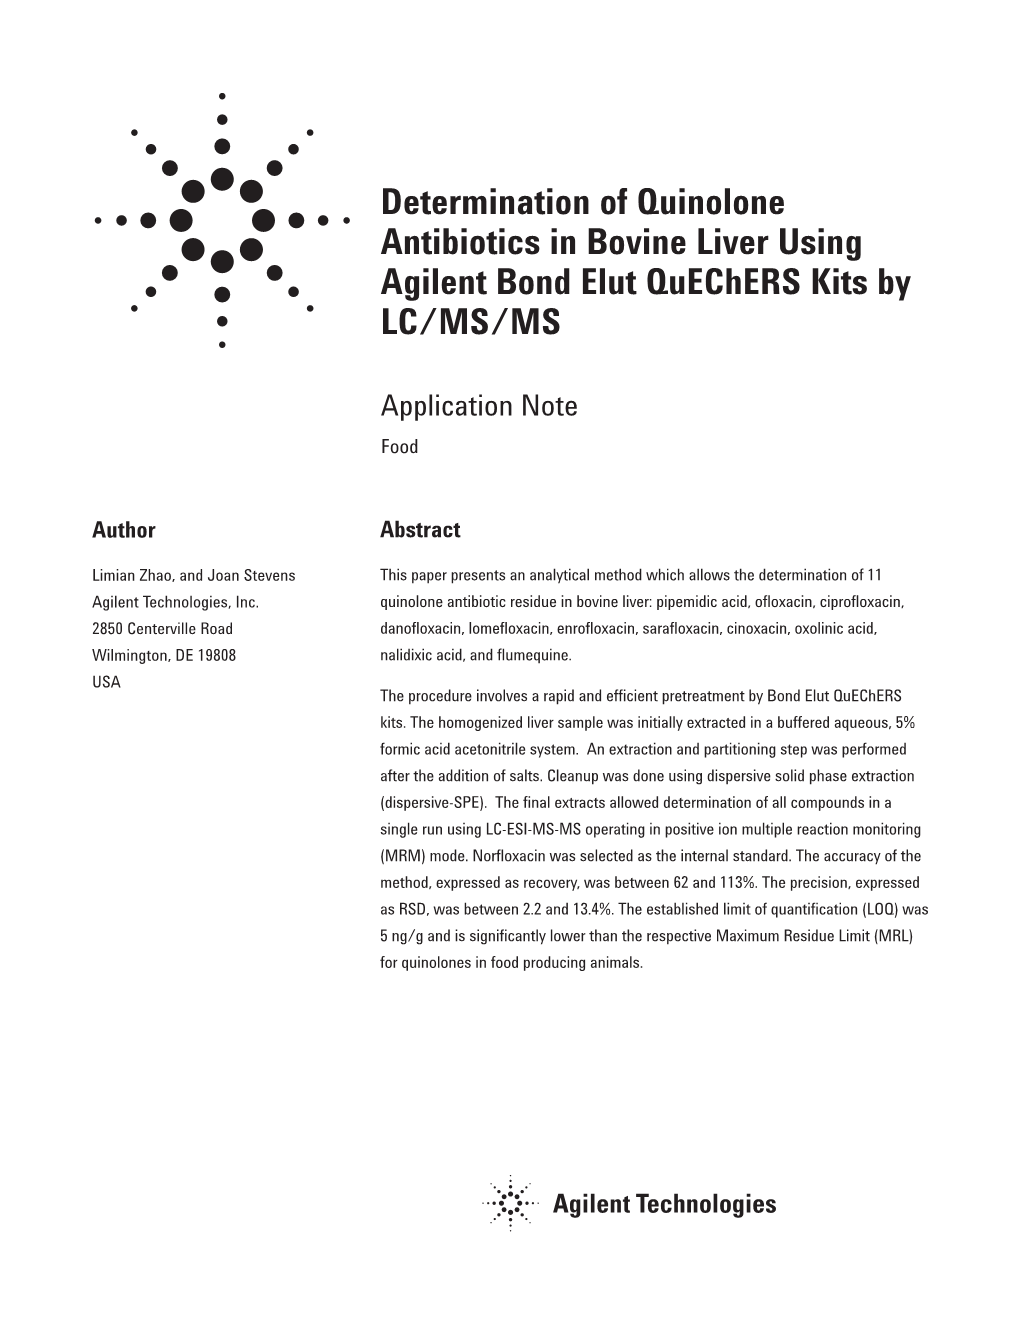 Determination of Quinolone Antibiotics in Bovine Liver Using Agilent Bond Elut Quechers Kits by LC/MS/MS